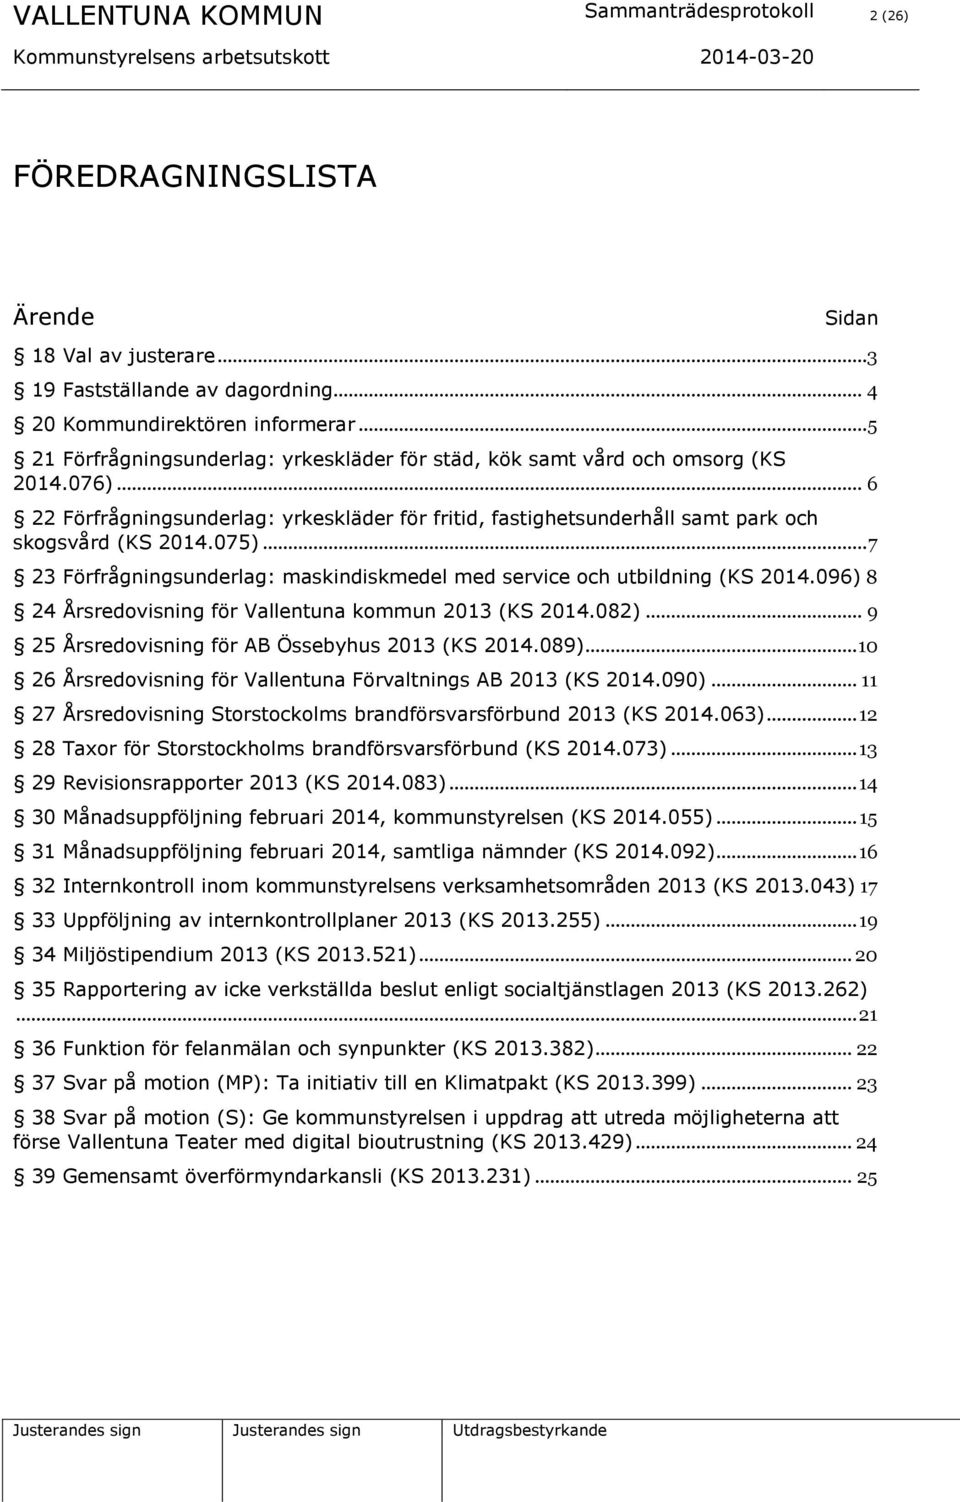 075)... 7 23 Förfrågningsunderlag: maskindiskmedel med service och utbildning (KS 2014.096) 8 24 Årsredovisning för Vallentuna kommun 2013 (KS 2014.082).